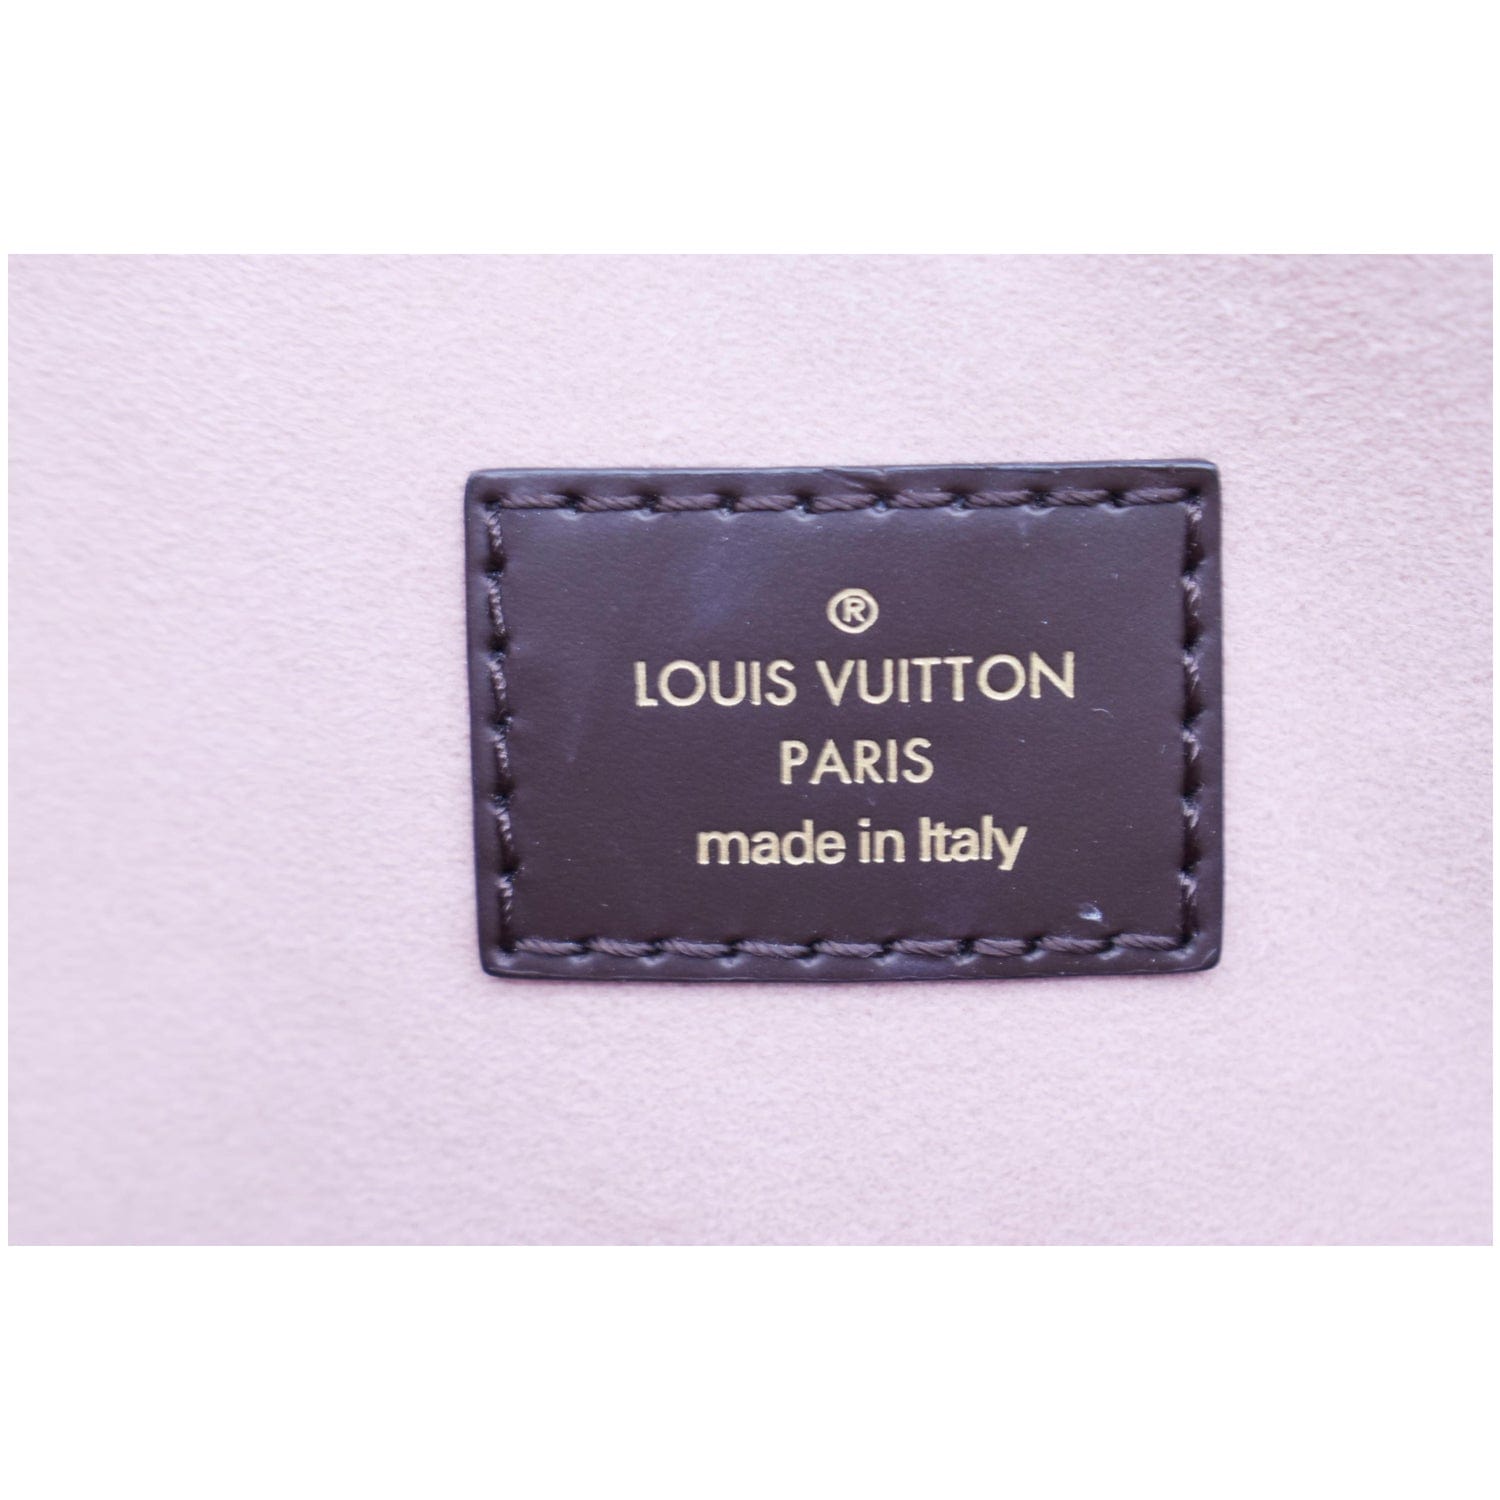 Louis Vuitton Damier Ebene Canvas & Magnolia Leather Normandy Wallet, myGemma, CH